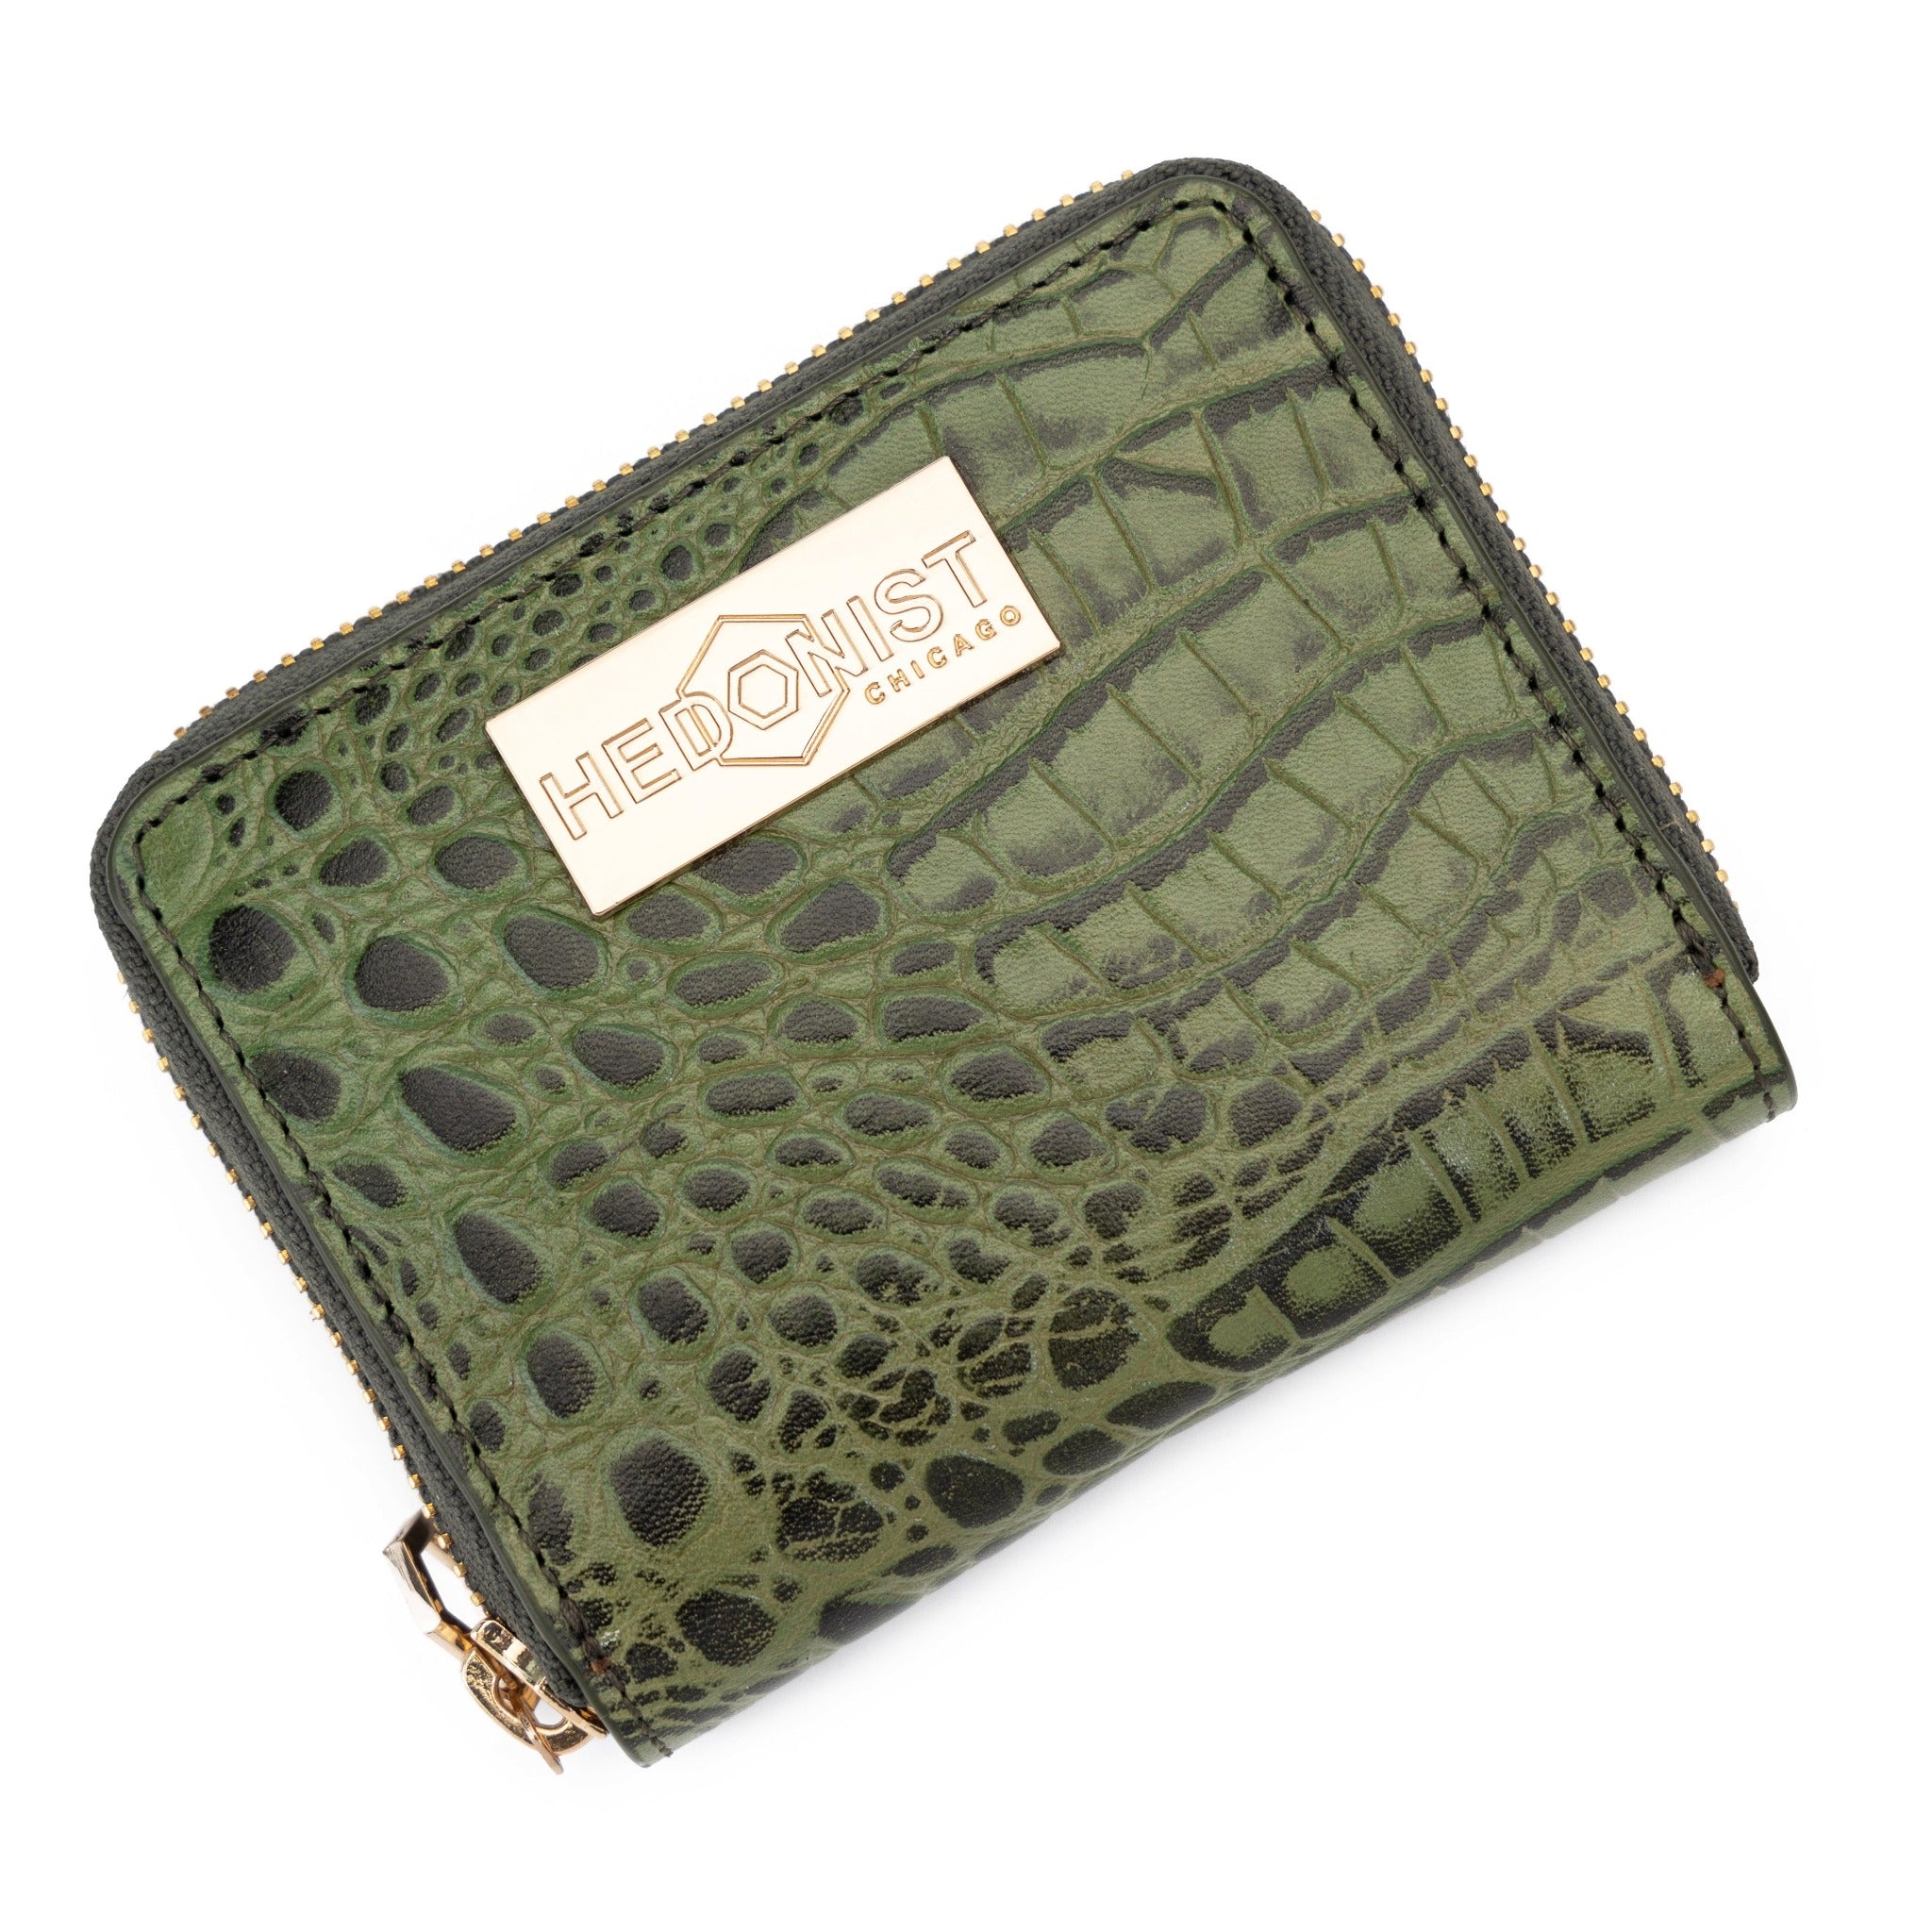 Compact Zip Wallet Croc Embossed Green / Cognac Inside 28839087440023